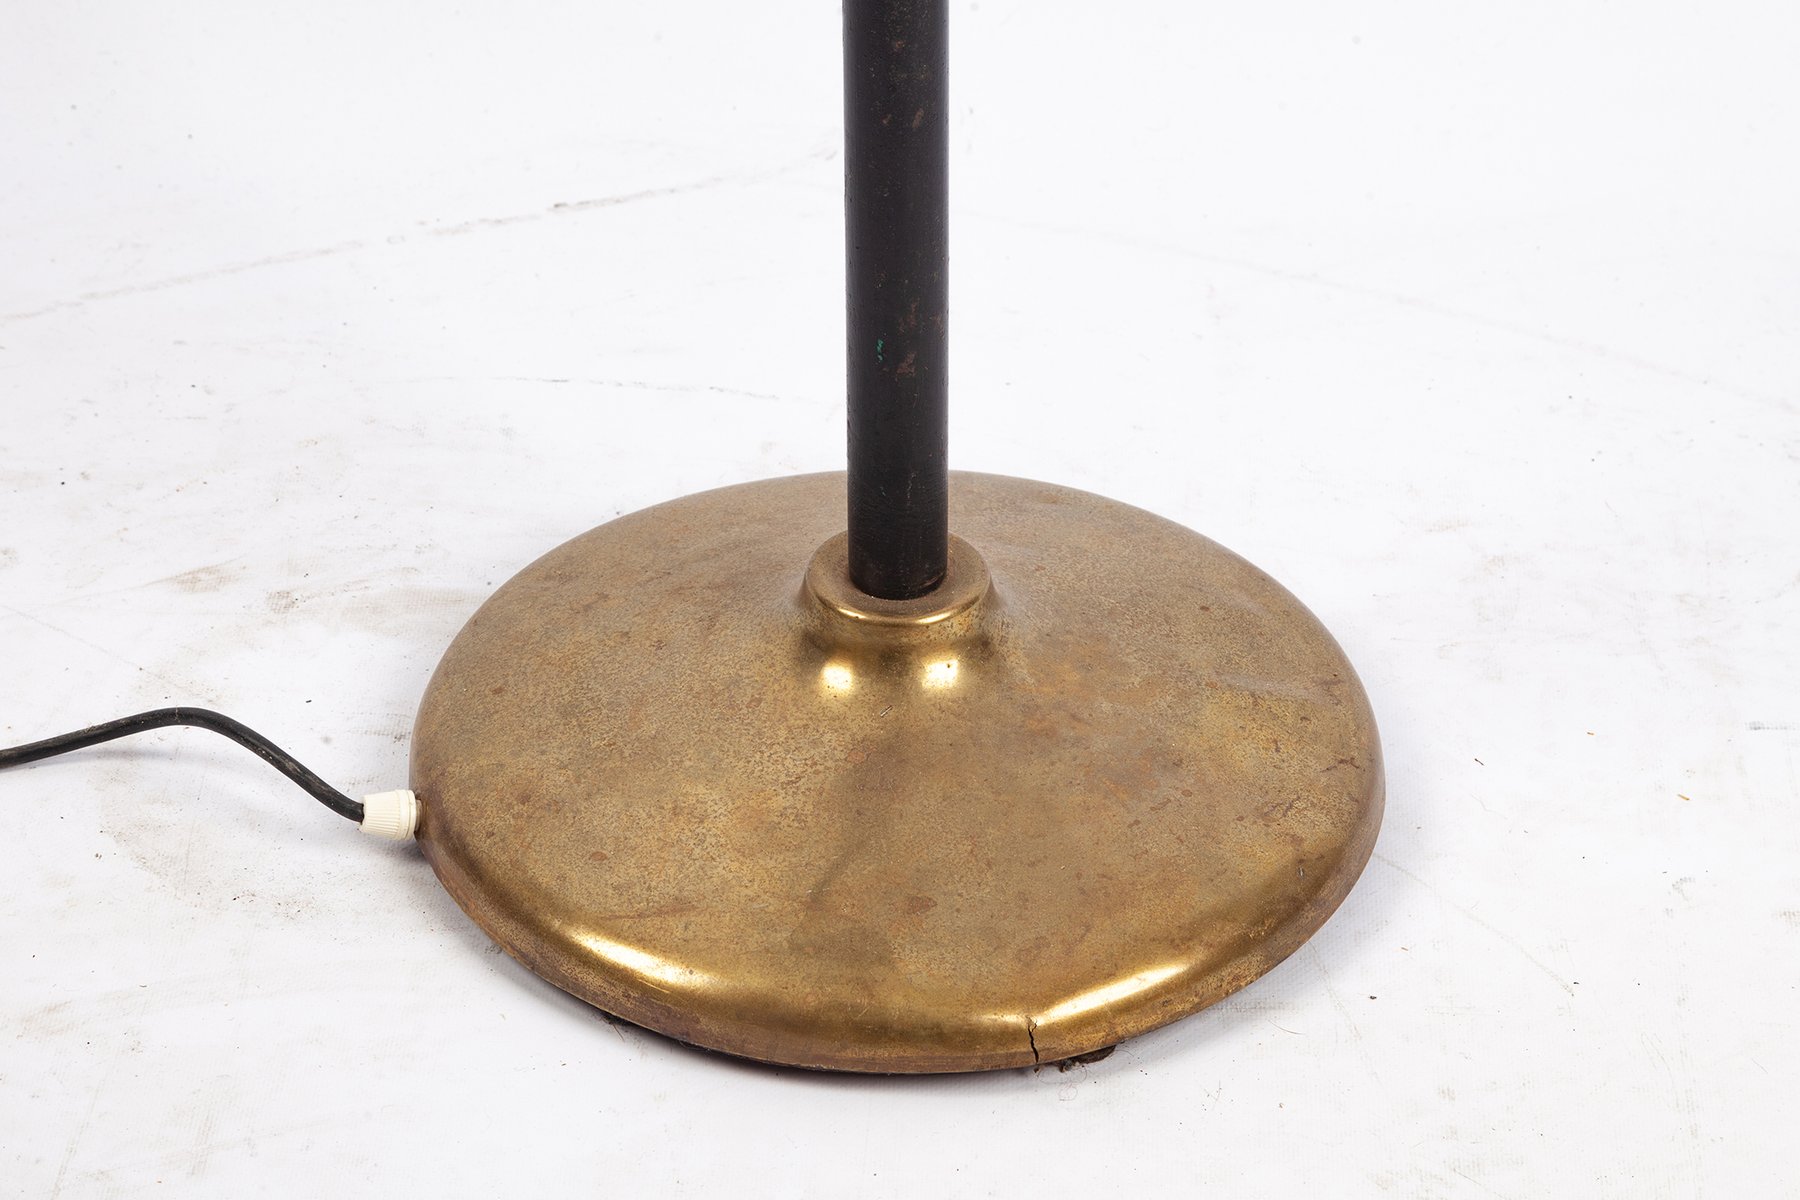 Stehlampe aus Messing & Metall von Arredoluce, 1950er